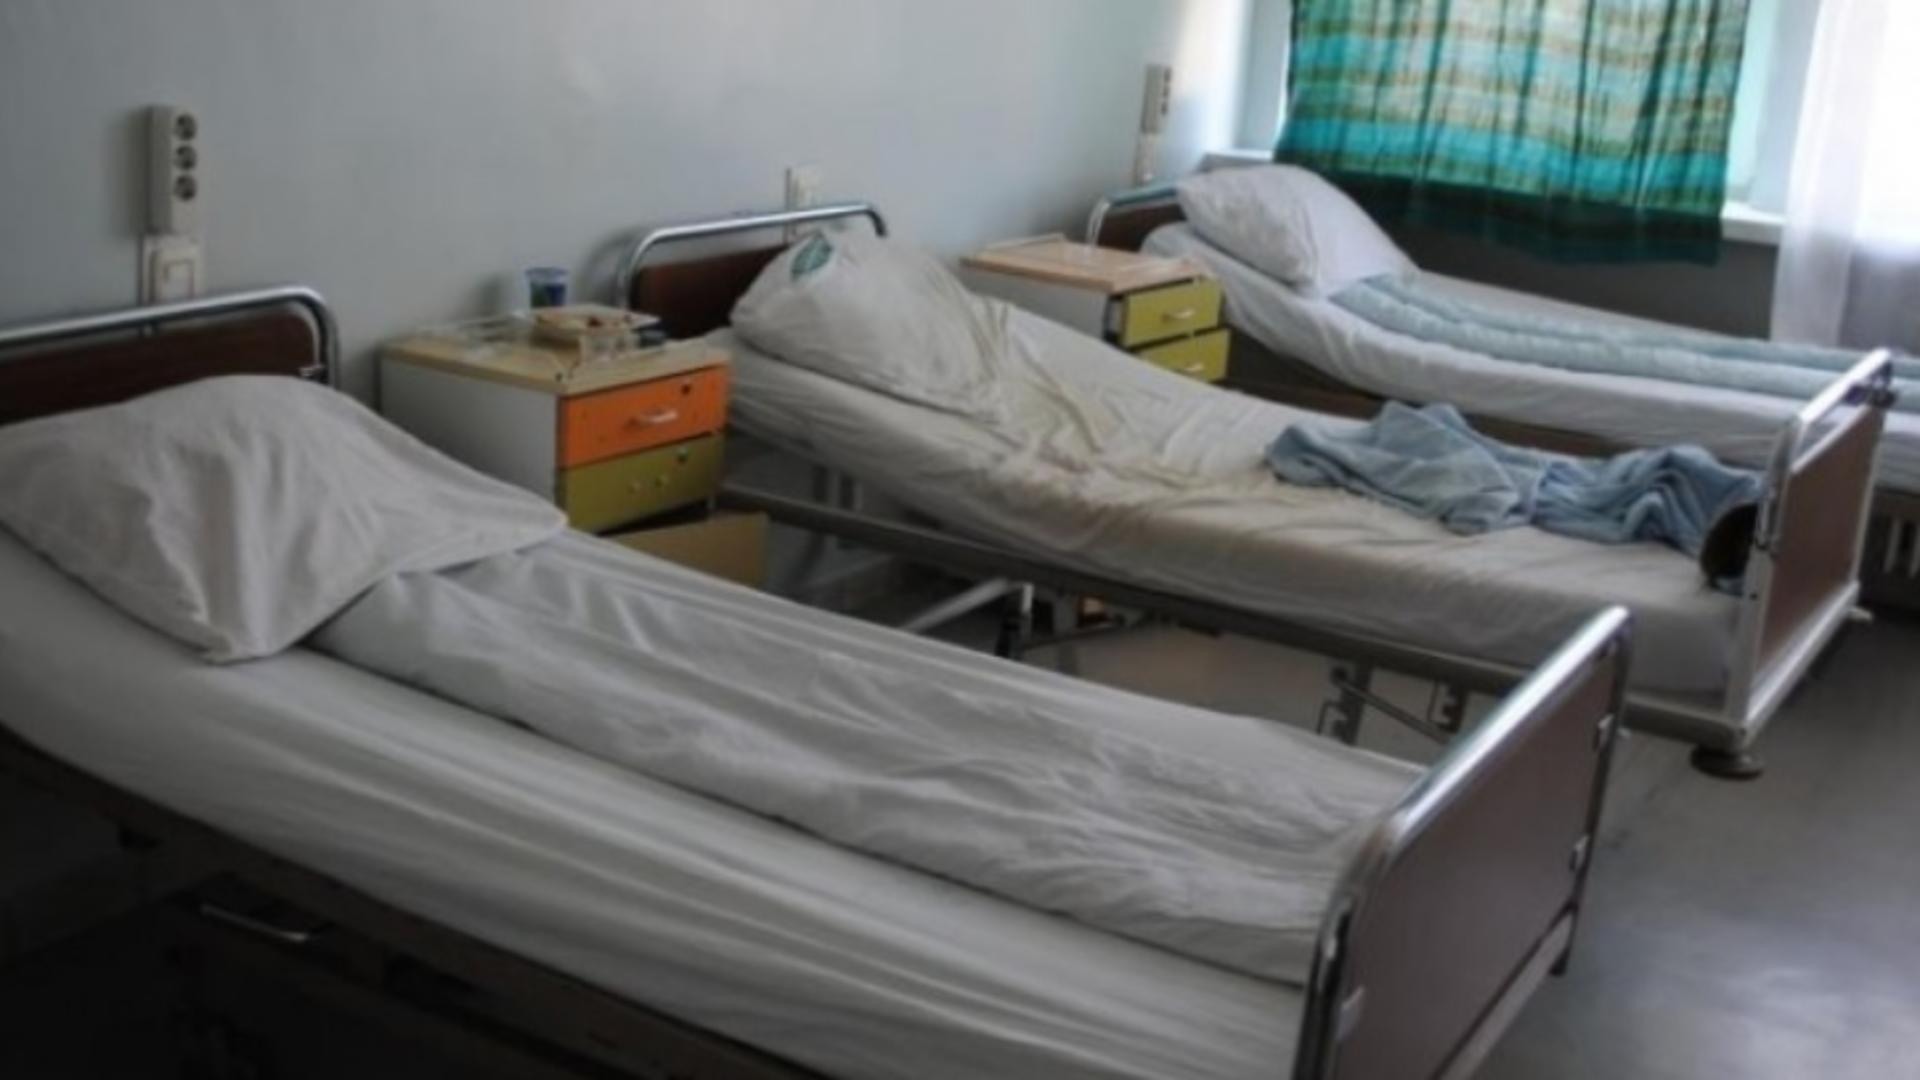 Numai pacient să nu fii: bătrân legat de pat, de un paznic, în vreme ce o asistentă țipă la el/ Arhivă foto